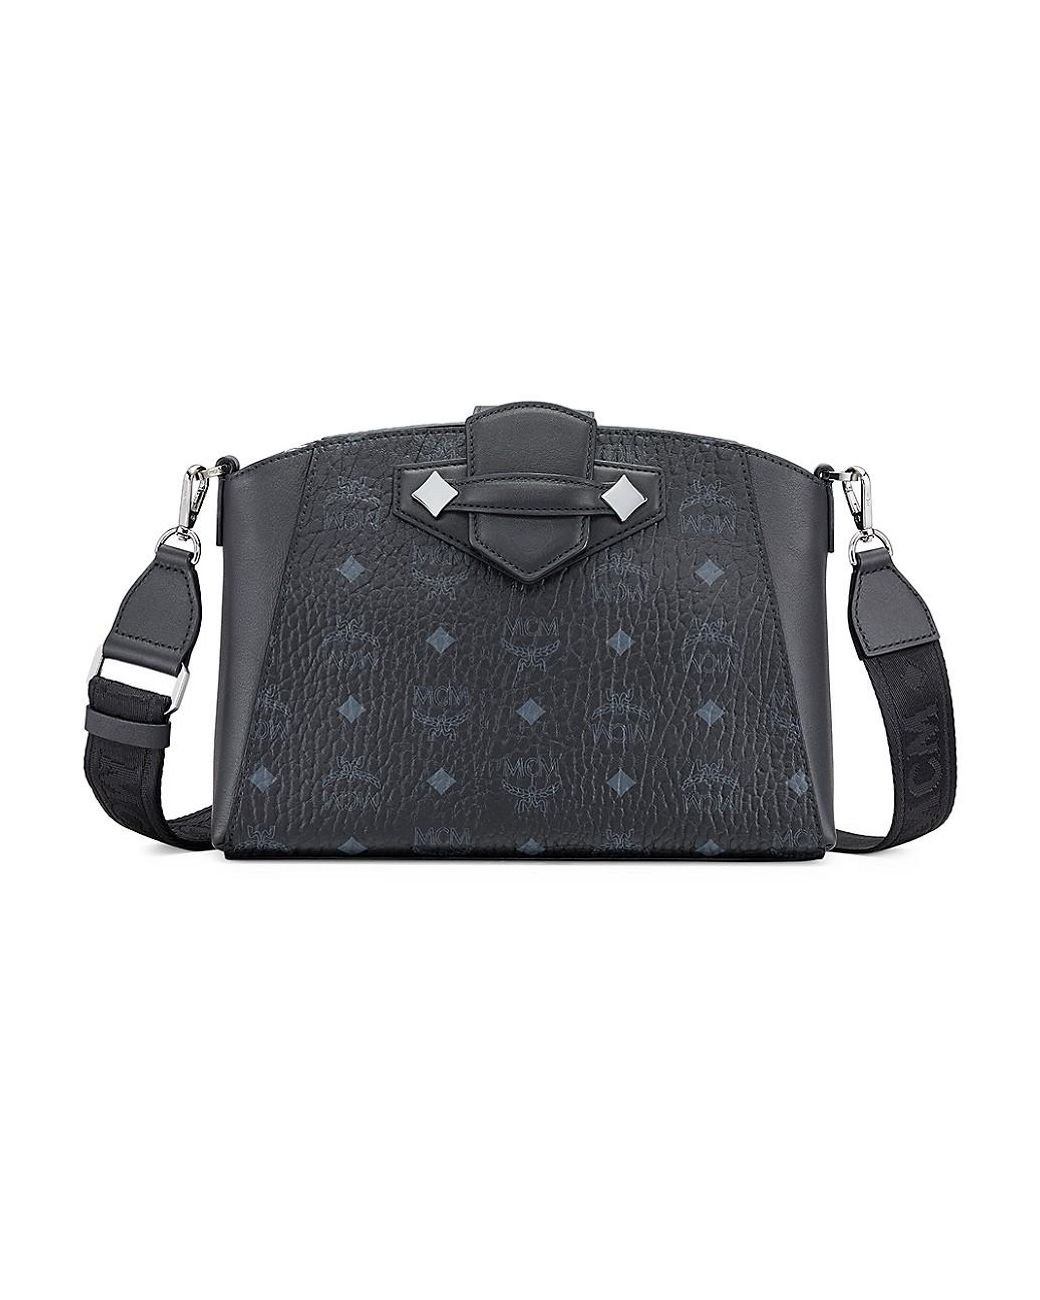 MCM Essential Visetos Crossbody Bag in Black